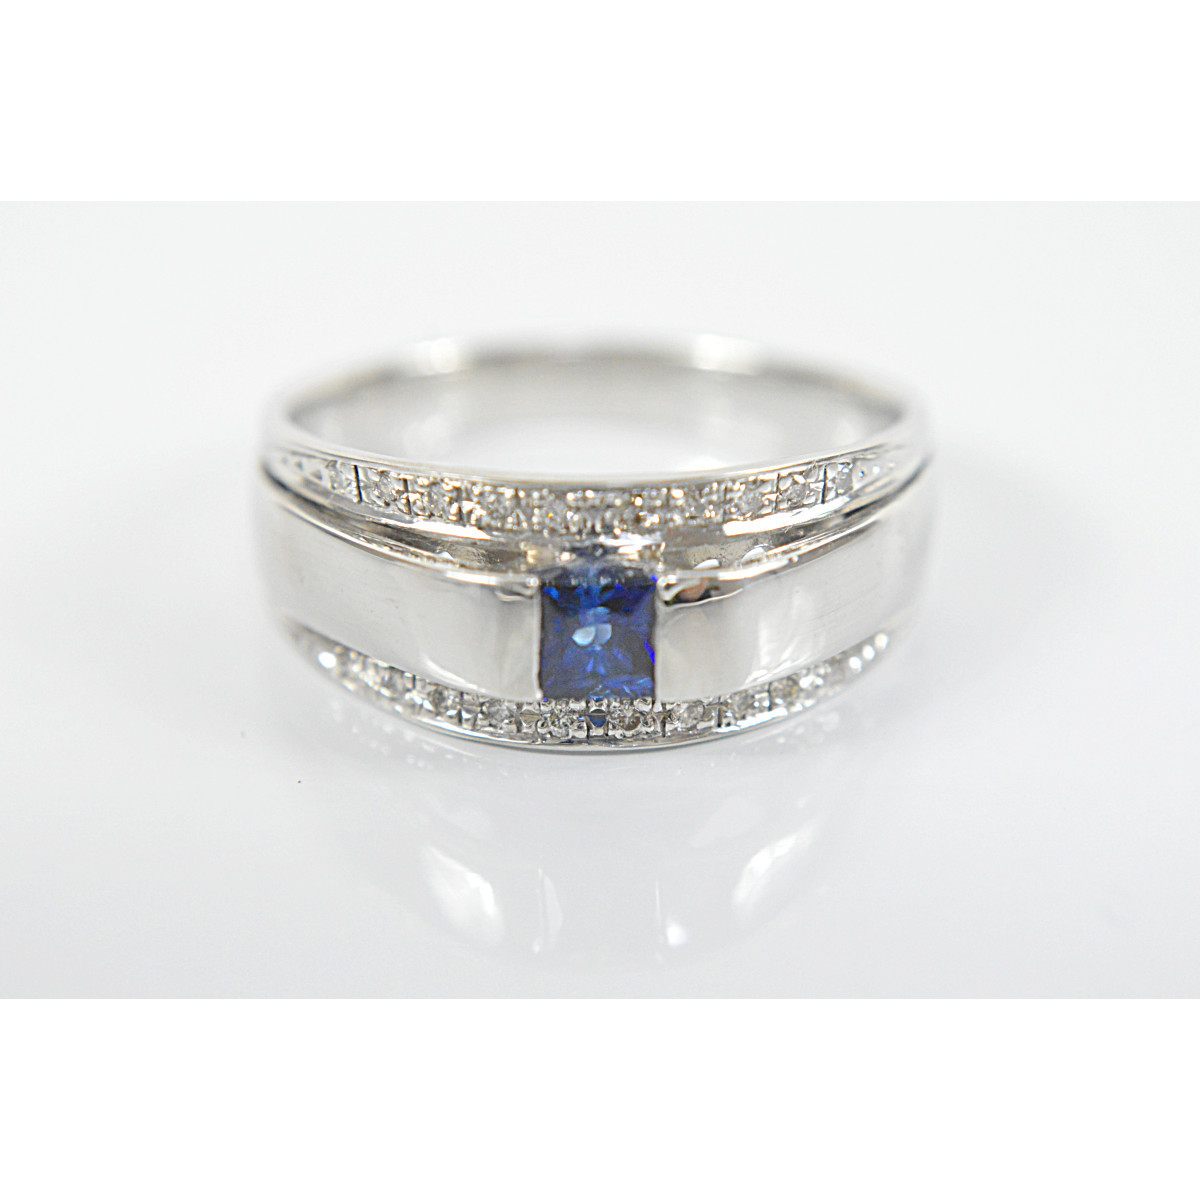 【返品交換不可】 ブルー 美しい PT900 サファイヤ 9.9g 21号 指輪 D0.13ct S0.41ct ピンキーリング ジュエリー メンズ ダイヤモンド プラチナ